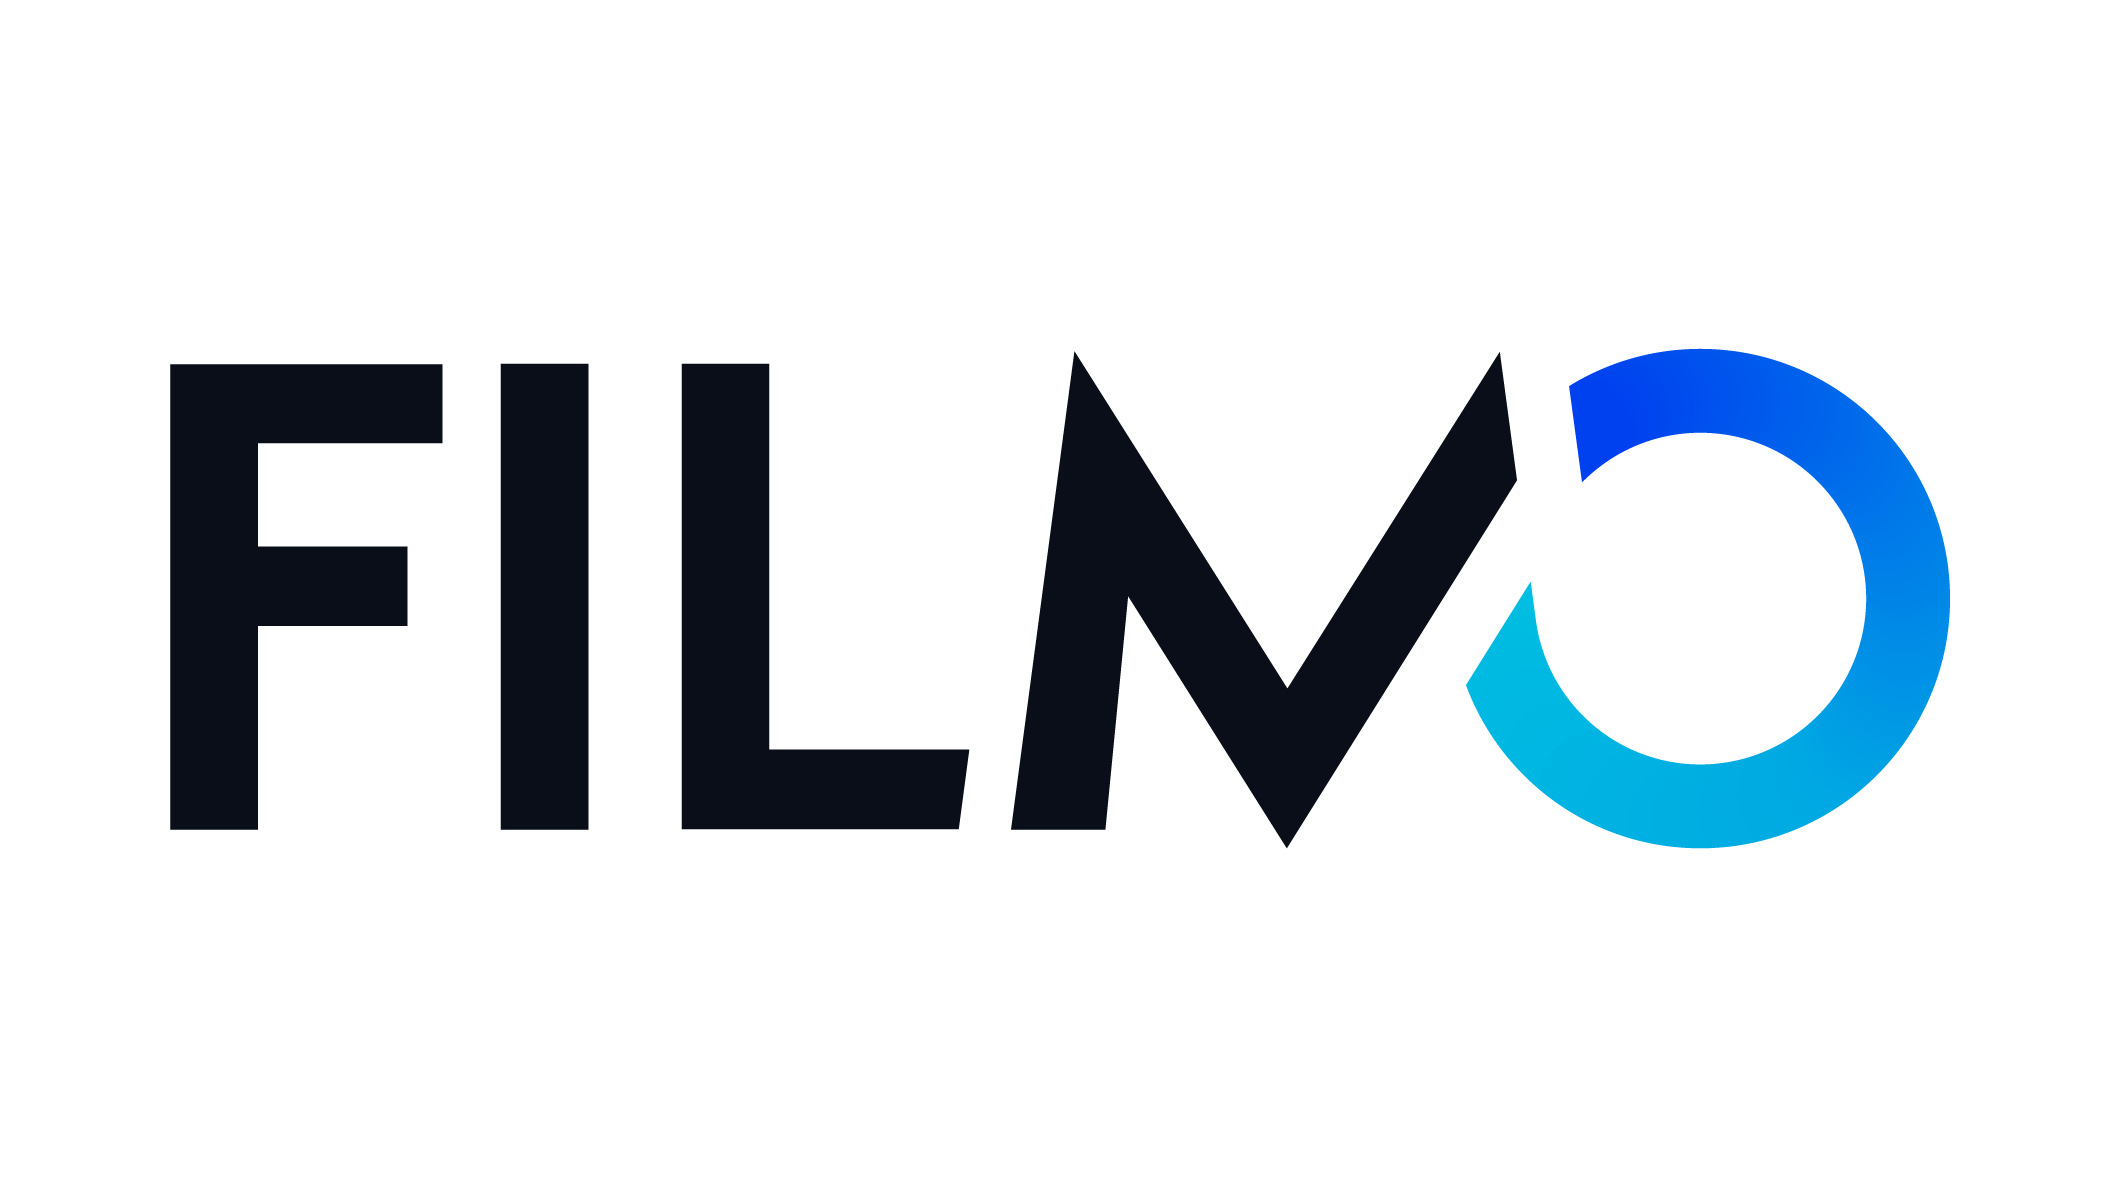 logo plateforme streaming svod filmo tv